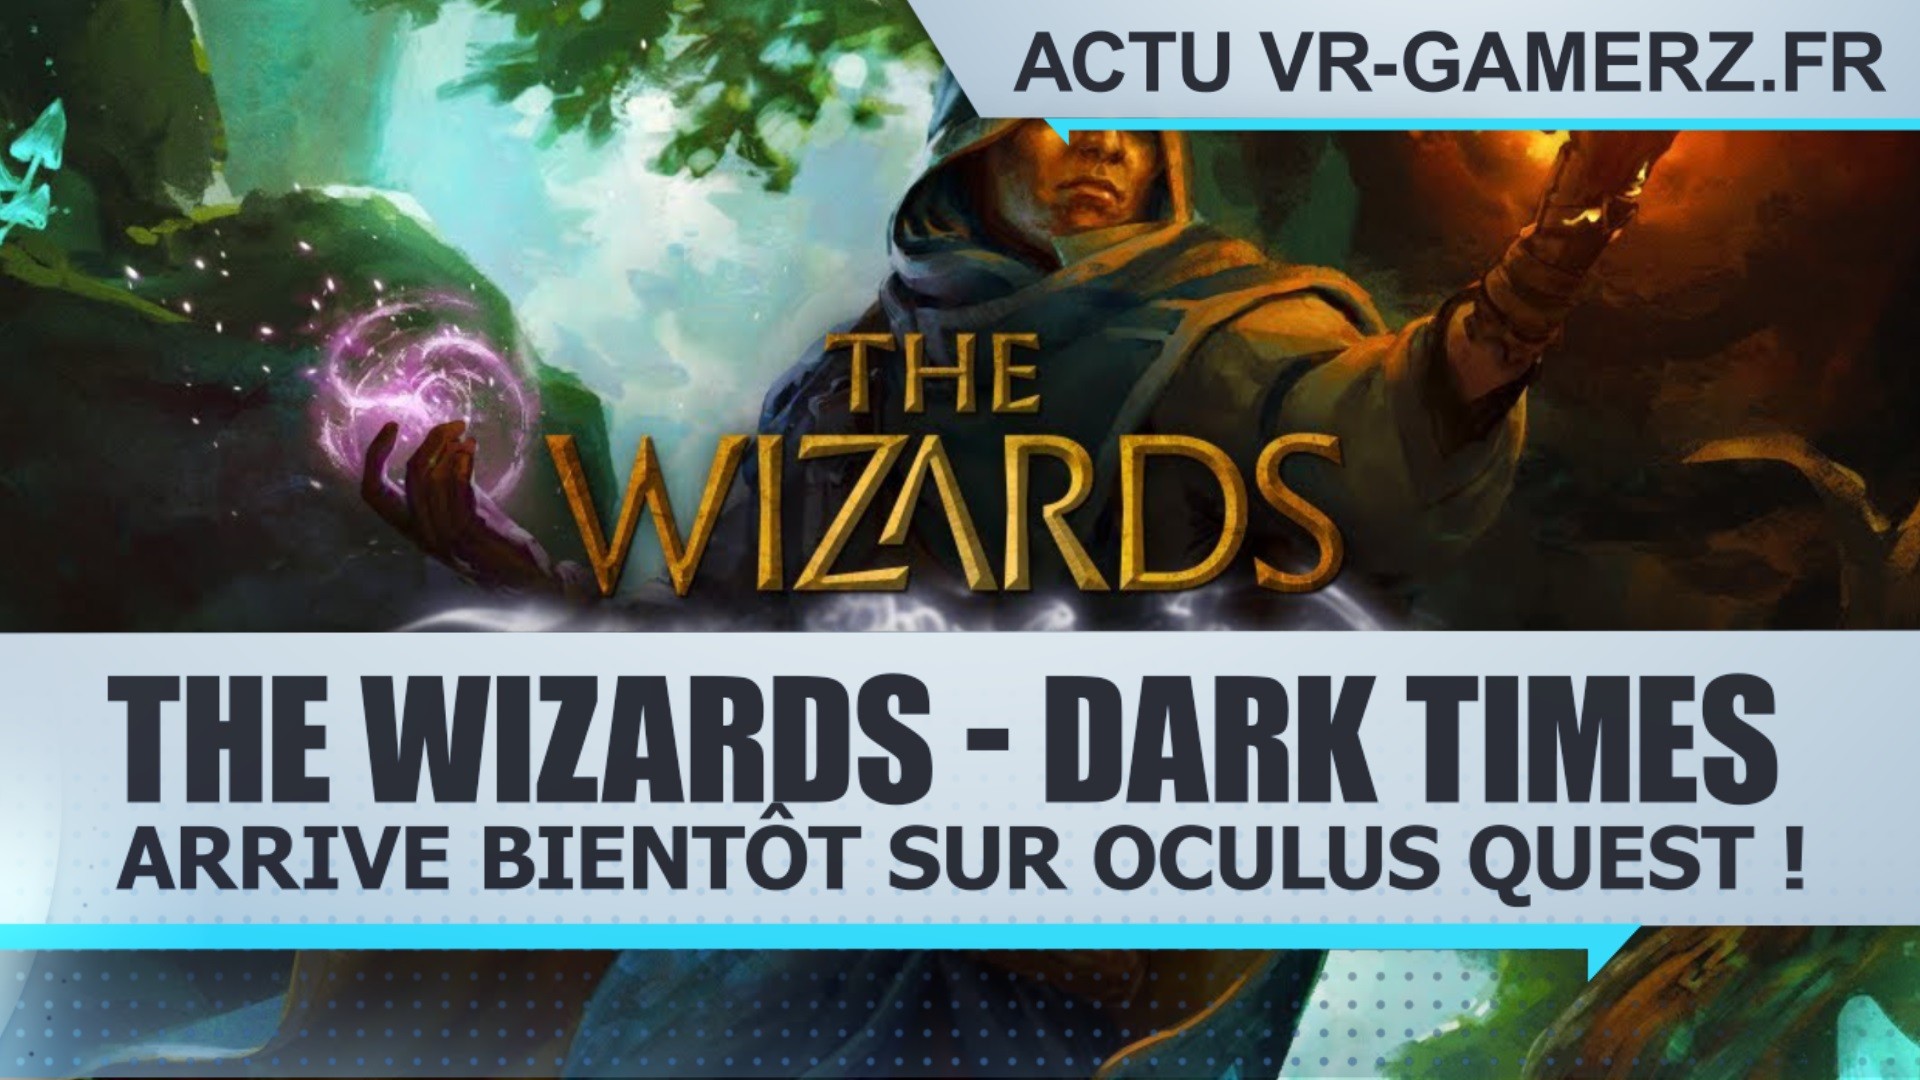 The Wizards – Dark Times arrive bientôt sur Oculus quest !